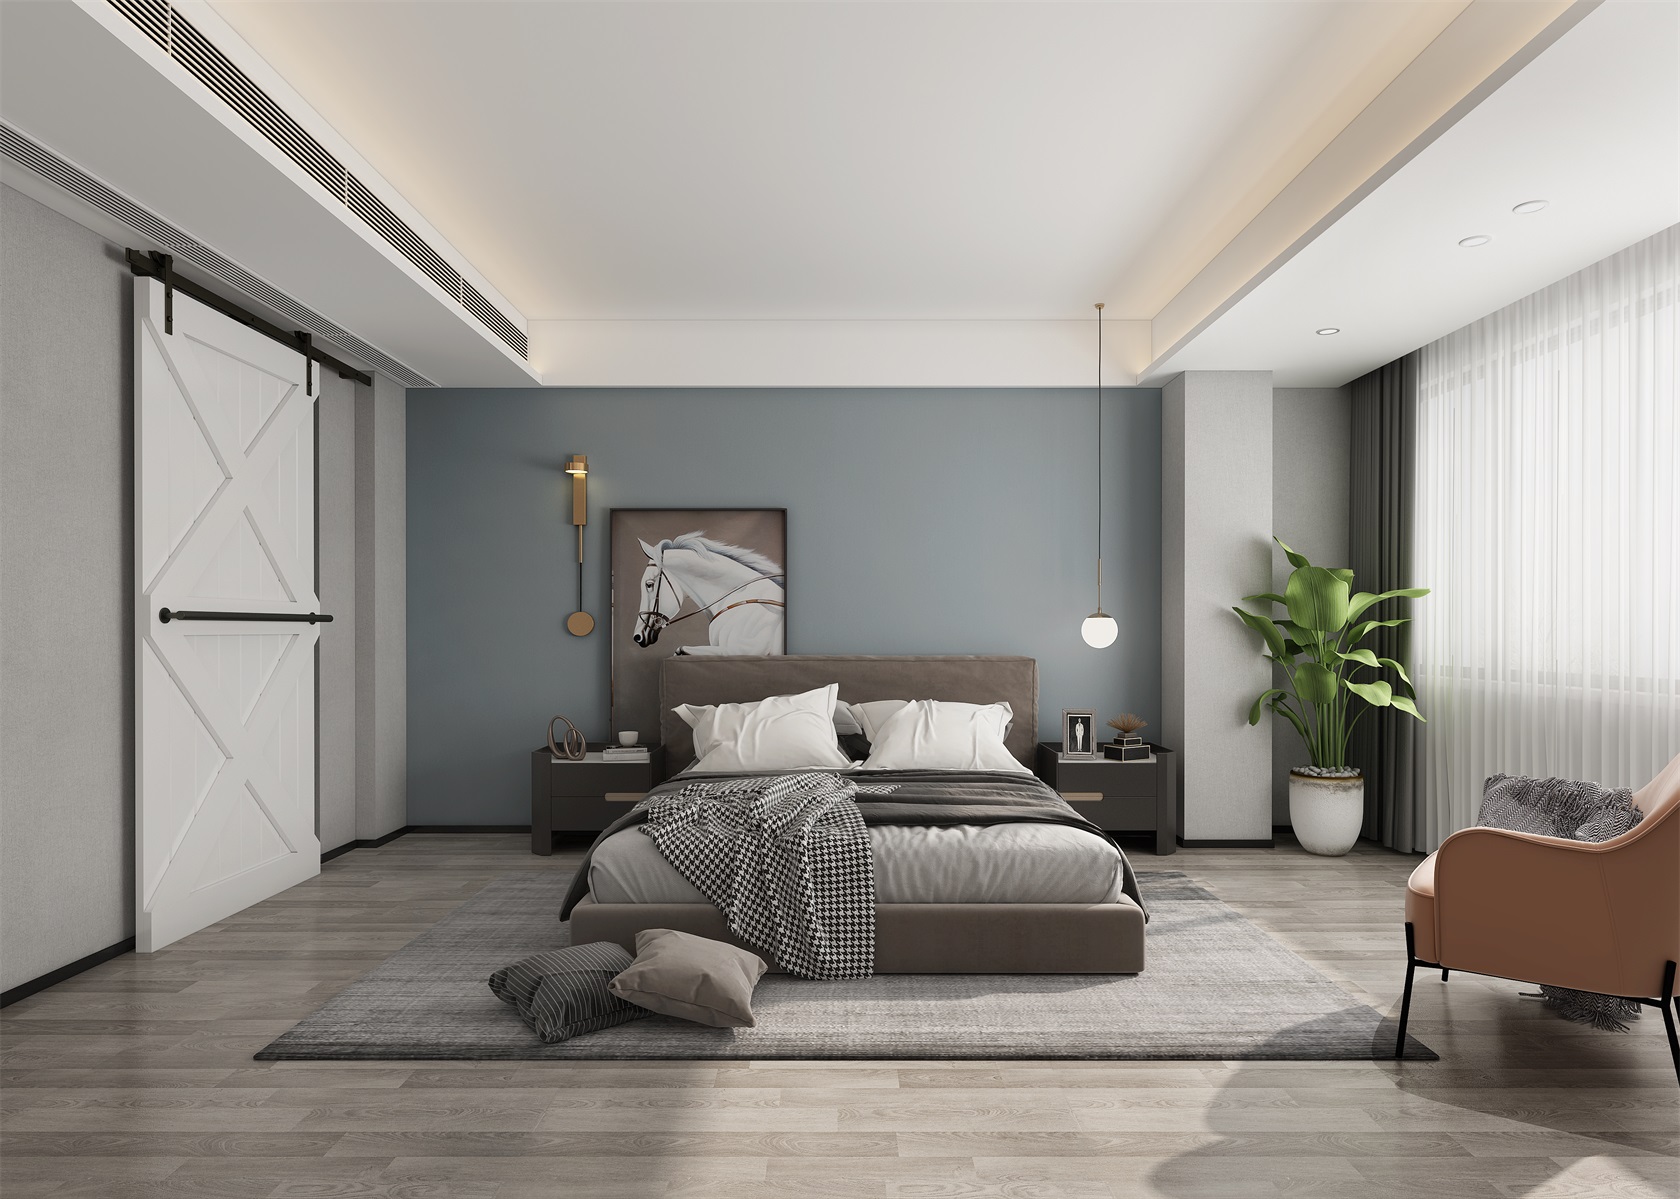 主卧背景墙使用了蓝色，搭配暖褐色的床头设计，营造沉稳高雅的氛围。